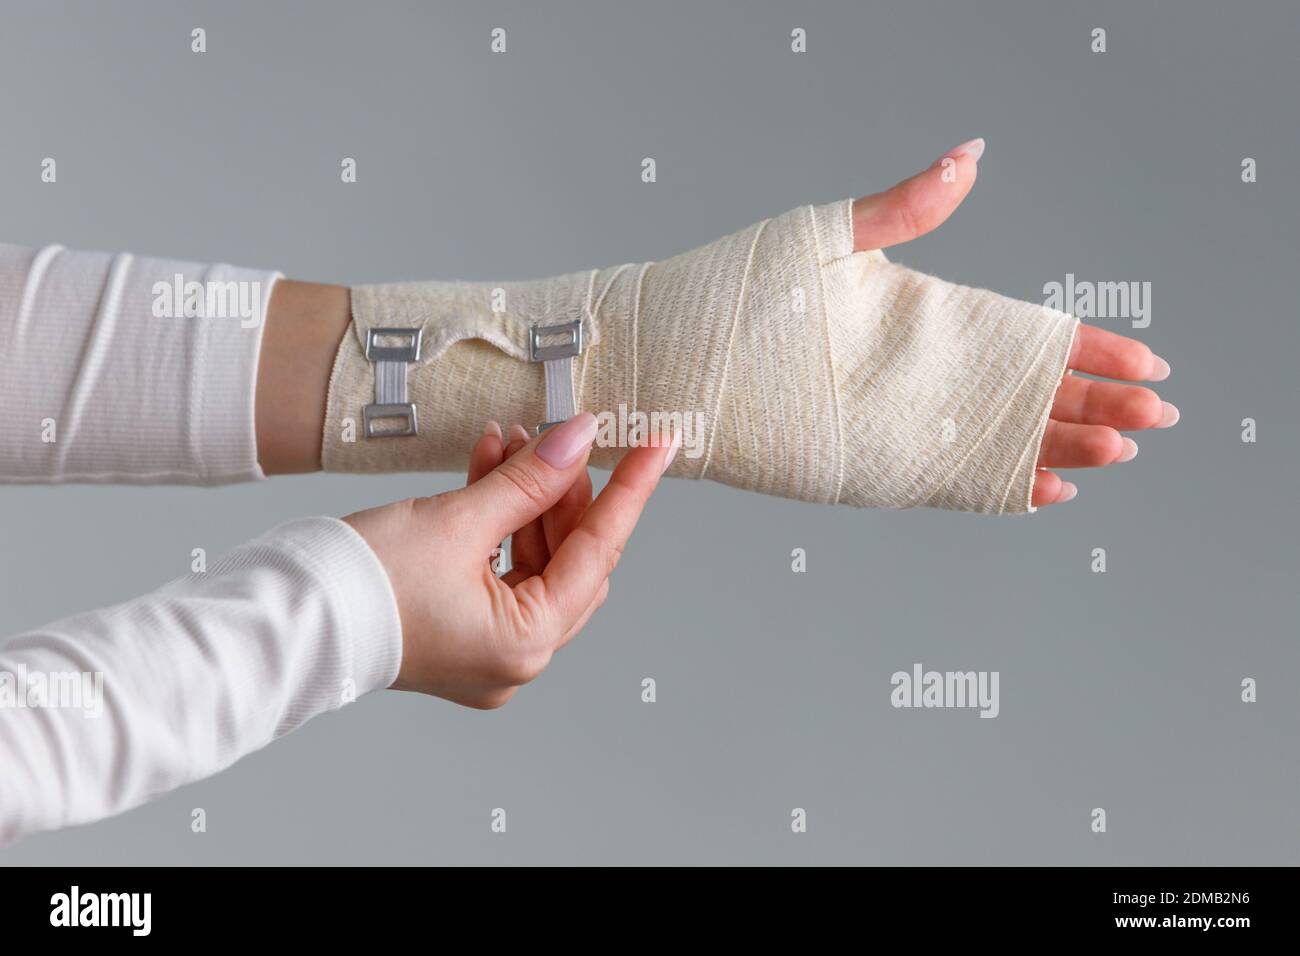 Primer plano de la mujer envolviendo su muñeca dolorosa con un vendaje  ortopédico flexible y elástico después de deportes o lesiones infructuosas.  Síndrome del túnel carpiano, artritis, concepto de esguince del brazo